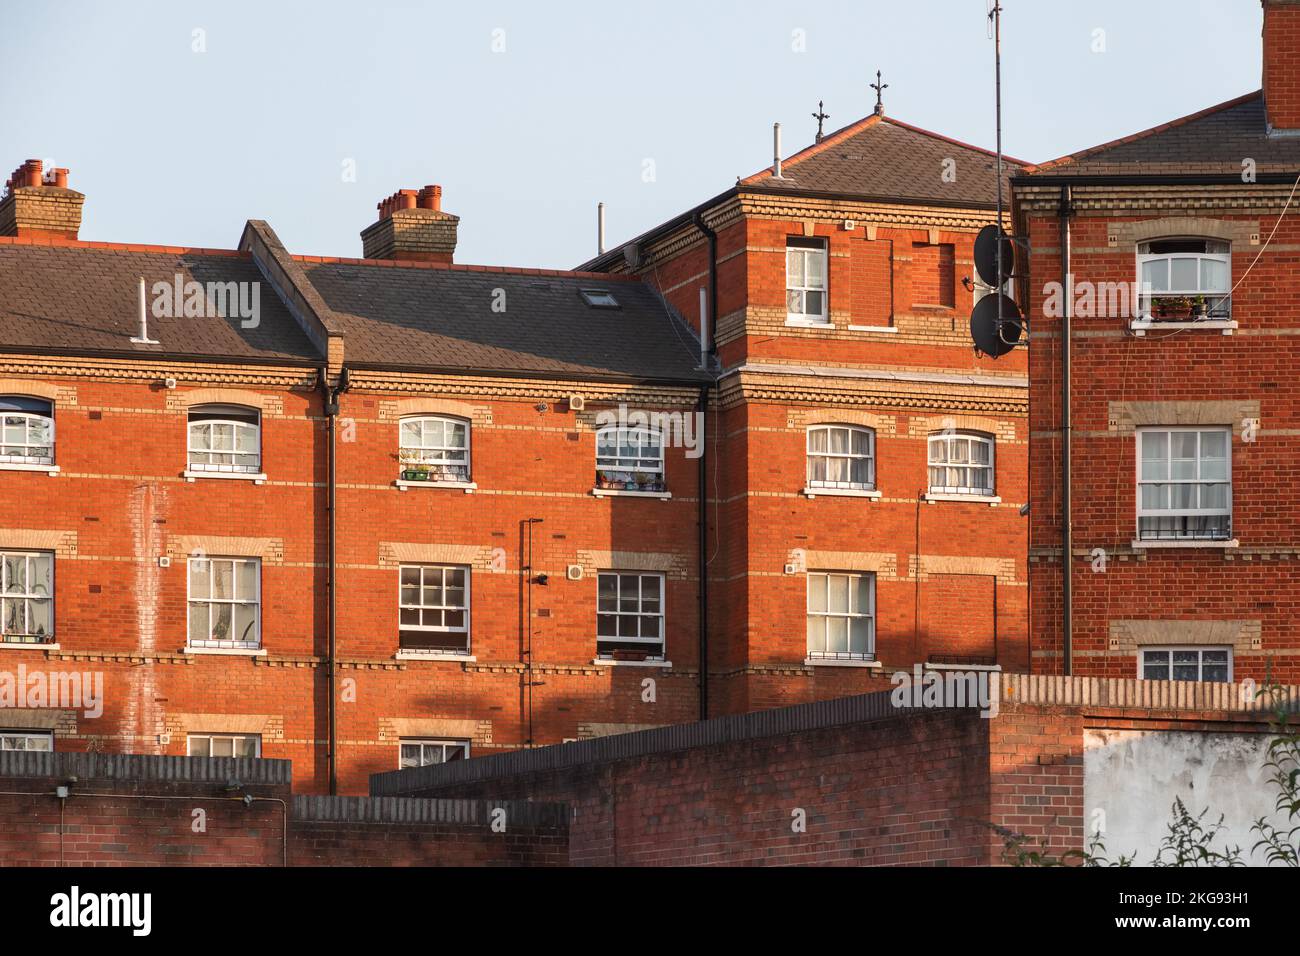 Terrasse de maisons en briques rouges avec fenêtres à guillotine autour de Cambridge Heath à Londres Banque D'Images